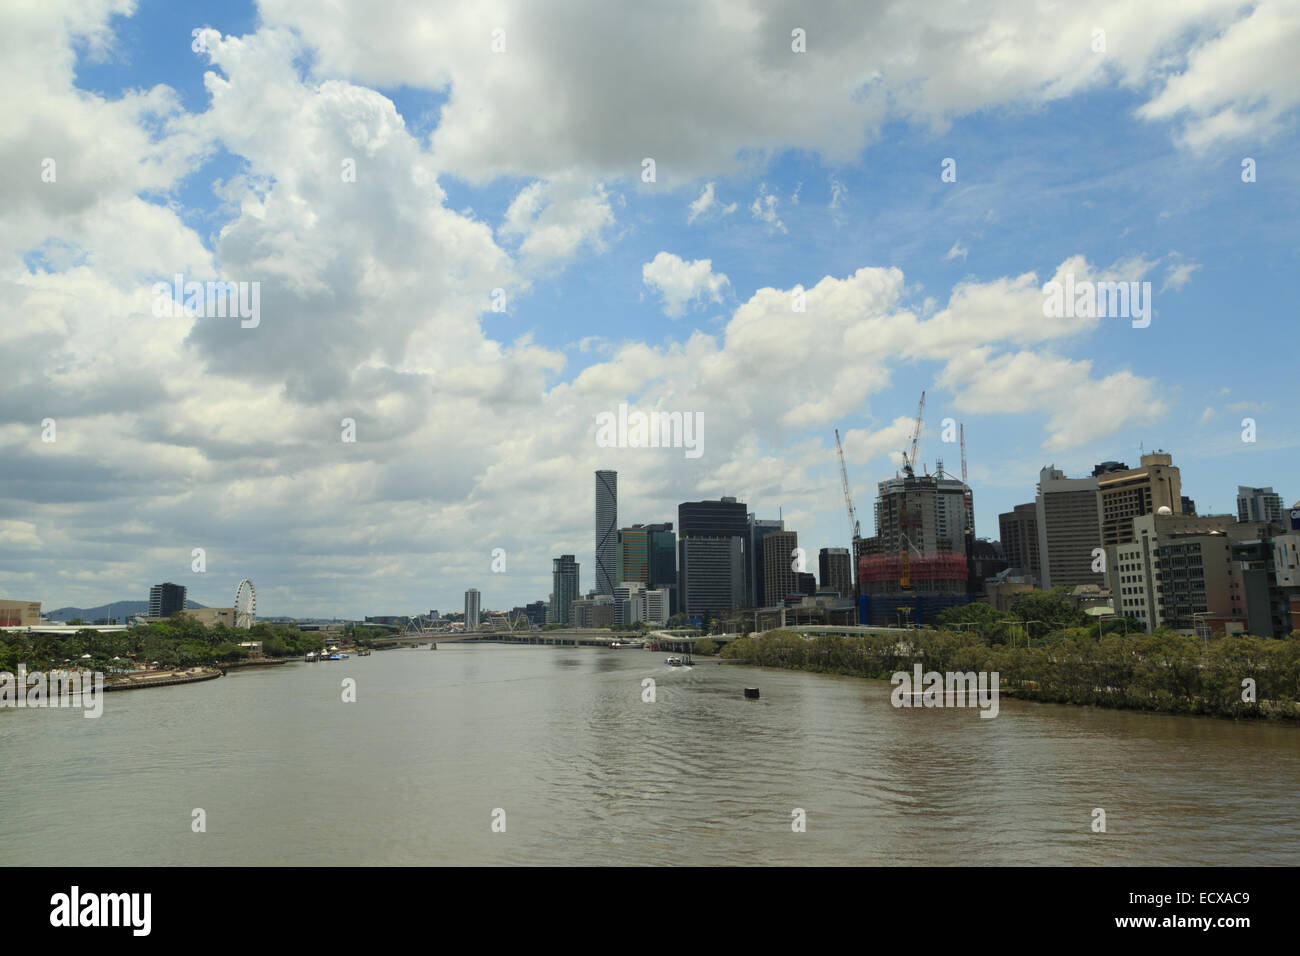 Ein Foto von den Brisbane River, aufgenommen an einem sonnigen Tag mit einigen flauschige weiße Wolken. Stockfoto